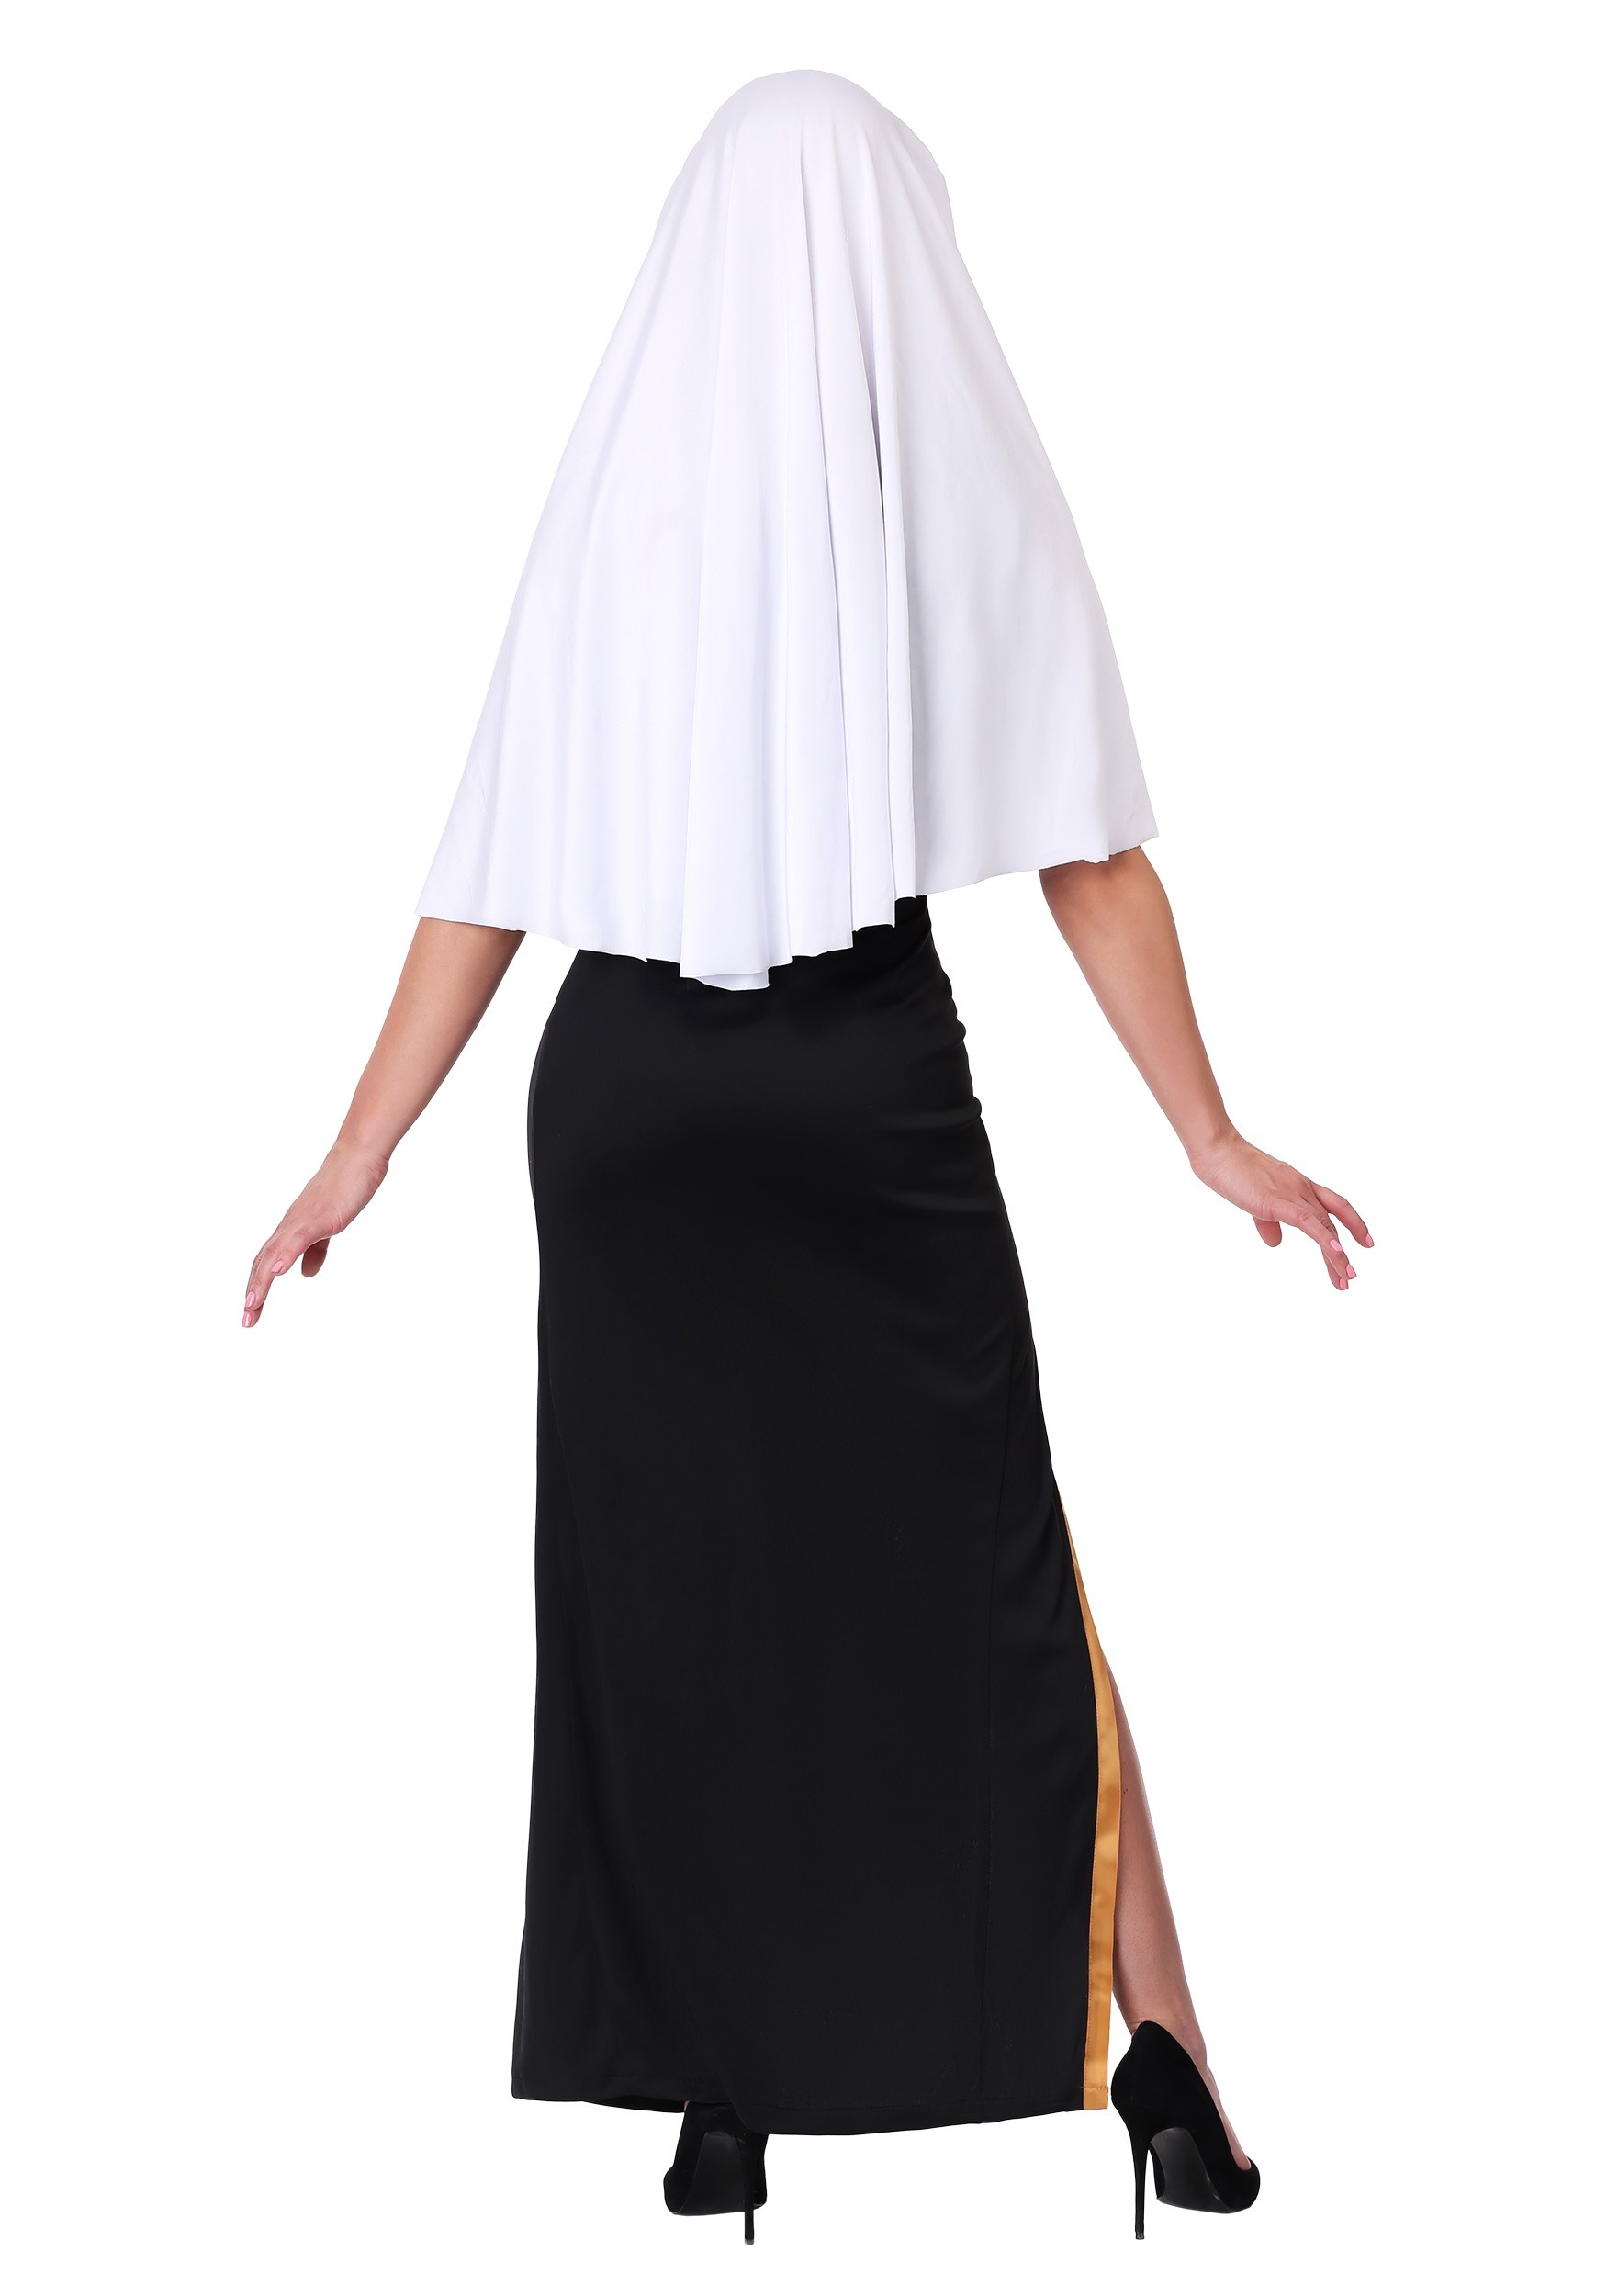 Women's Holy Nun Fancy Dress Costume